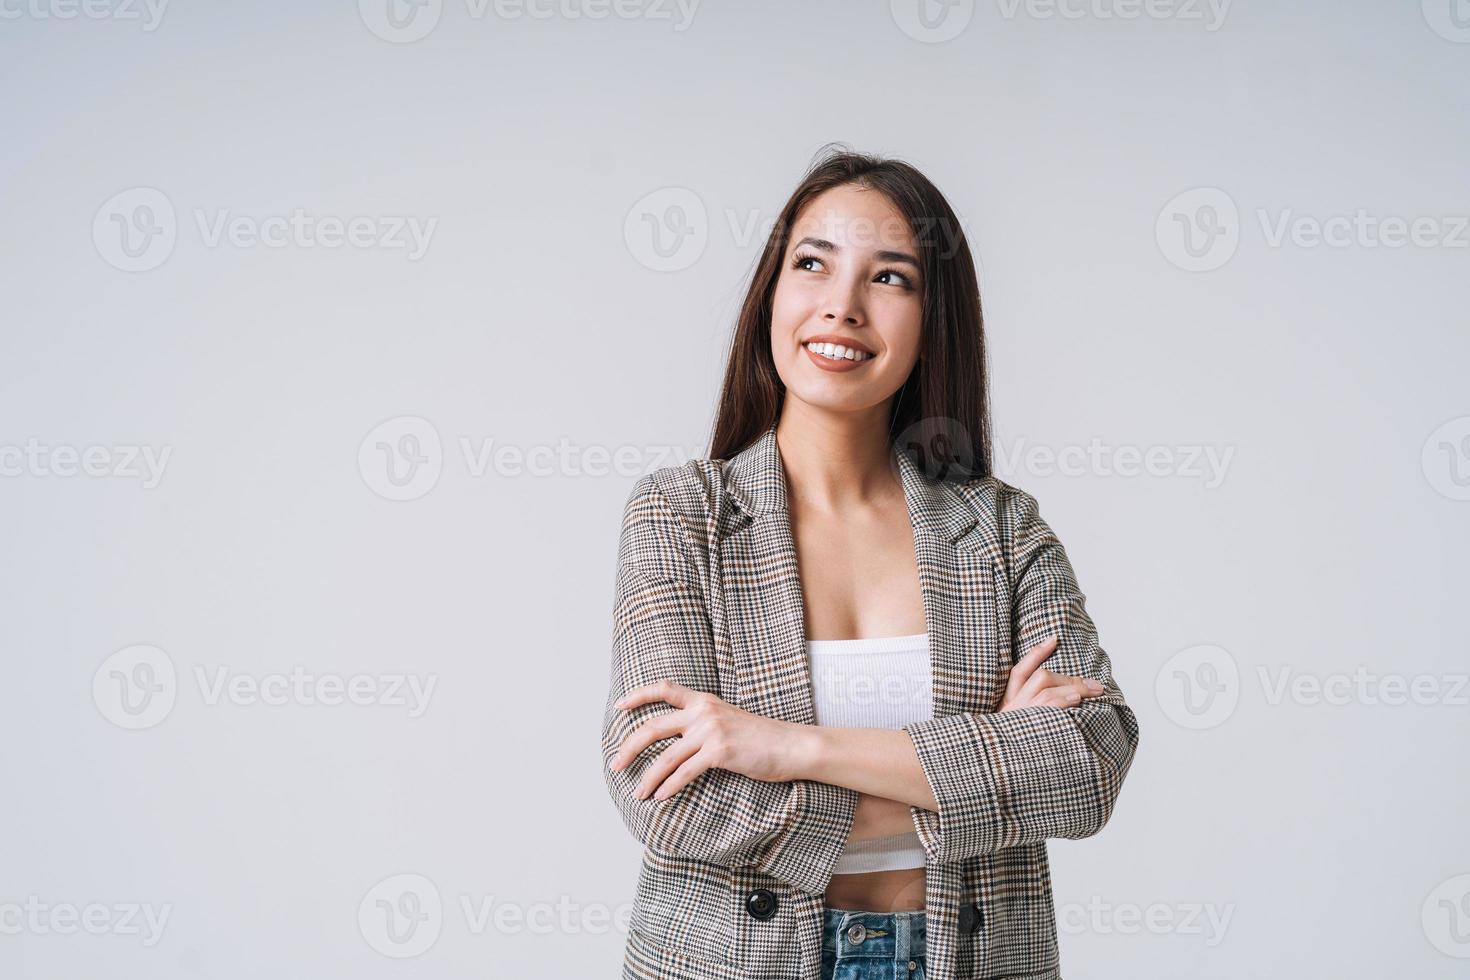 jeune femme asiatique heureuse aux cheveux longs en costume sur fond gris photo